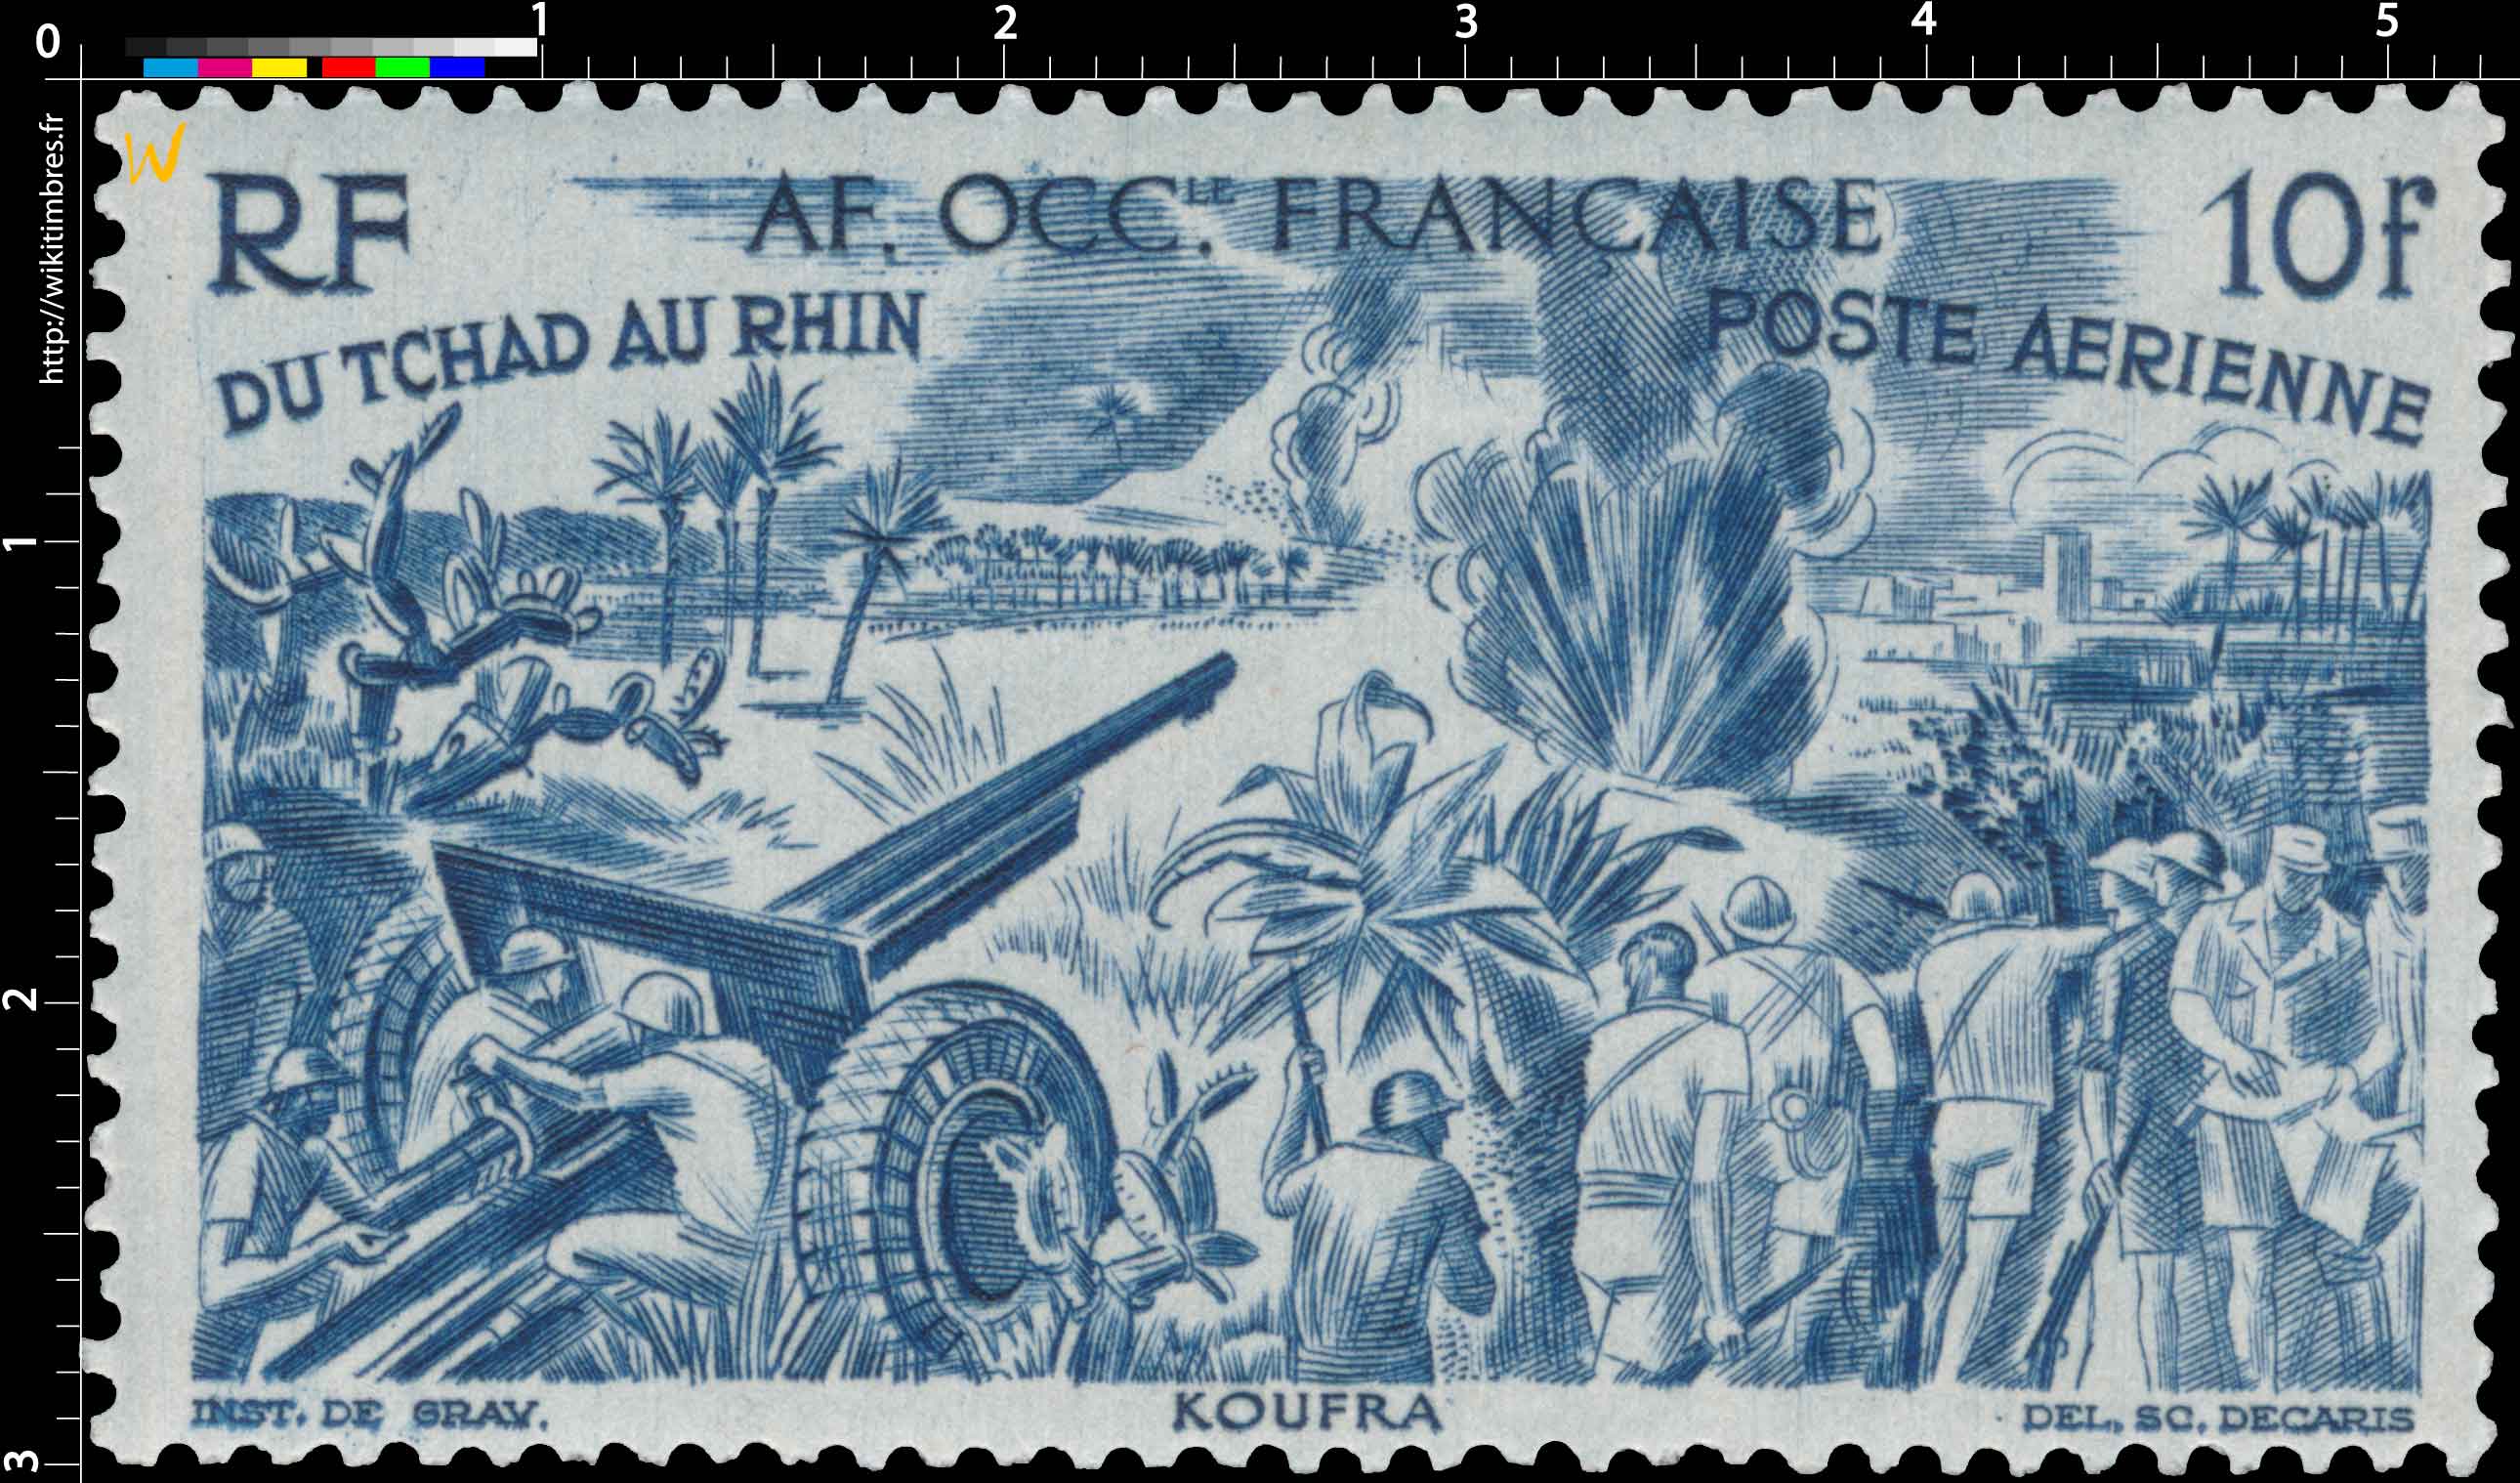 Afrique Occidentale Française - type du Tchad au Rhin